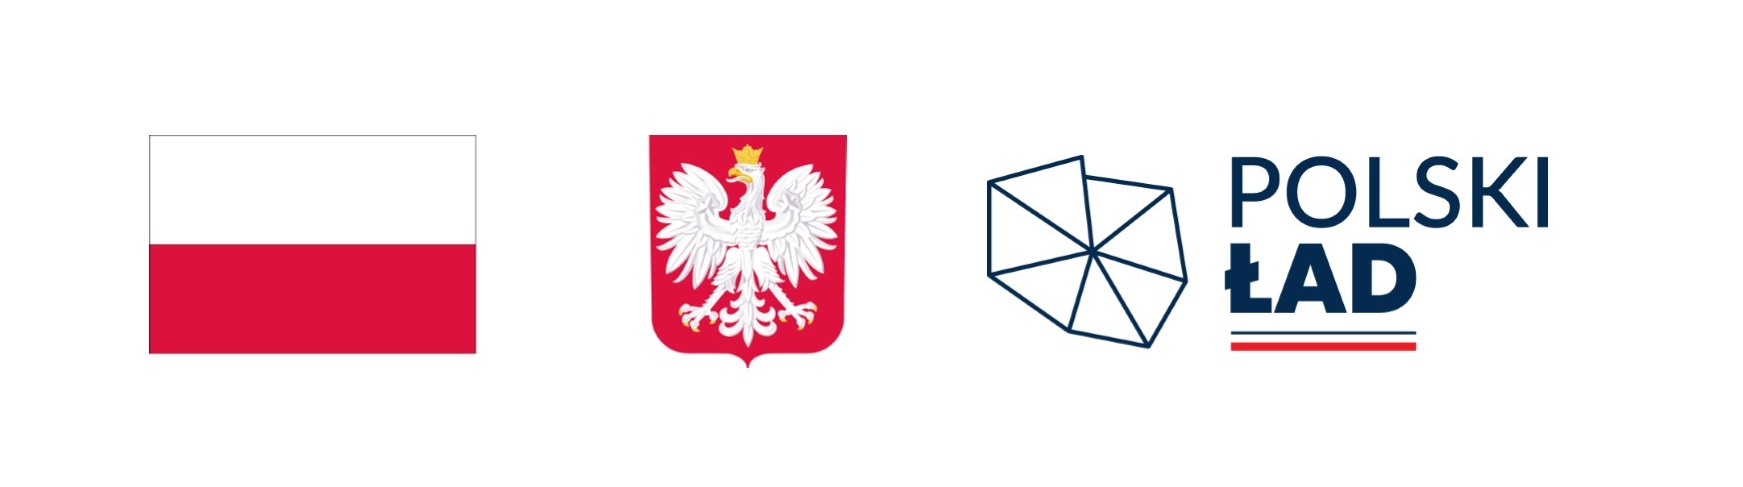 logotypy programu Polski Ład